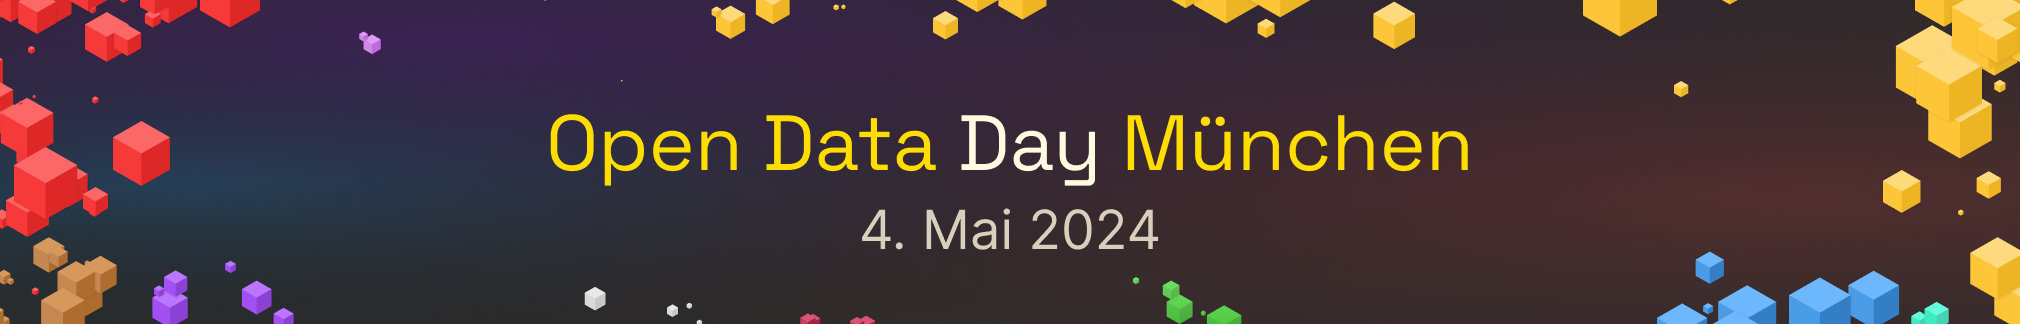 Open Data Day 2024 - 4. Mai 2024